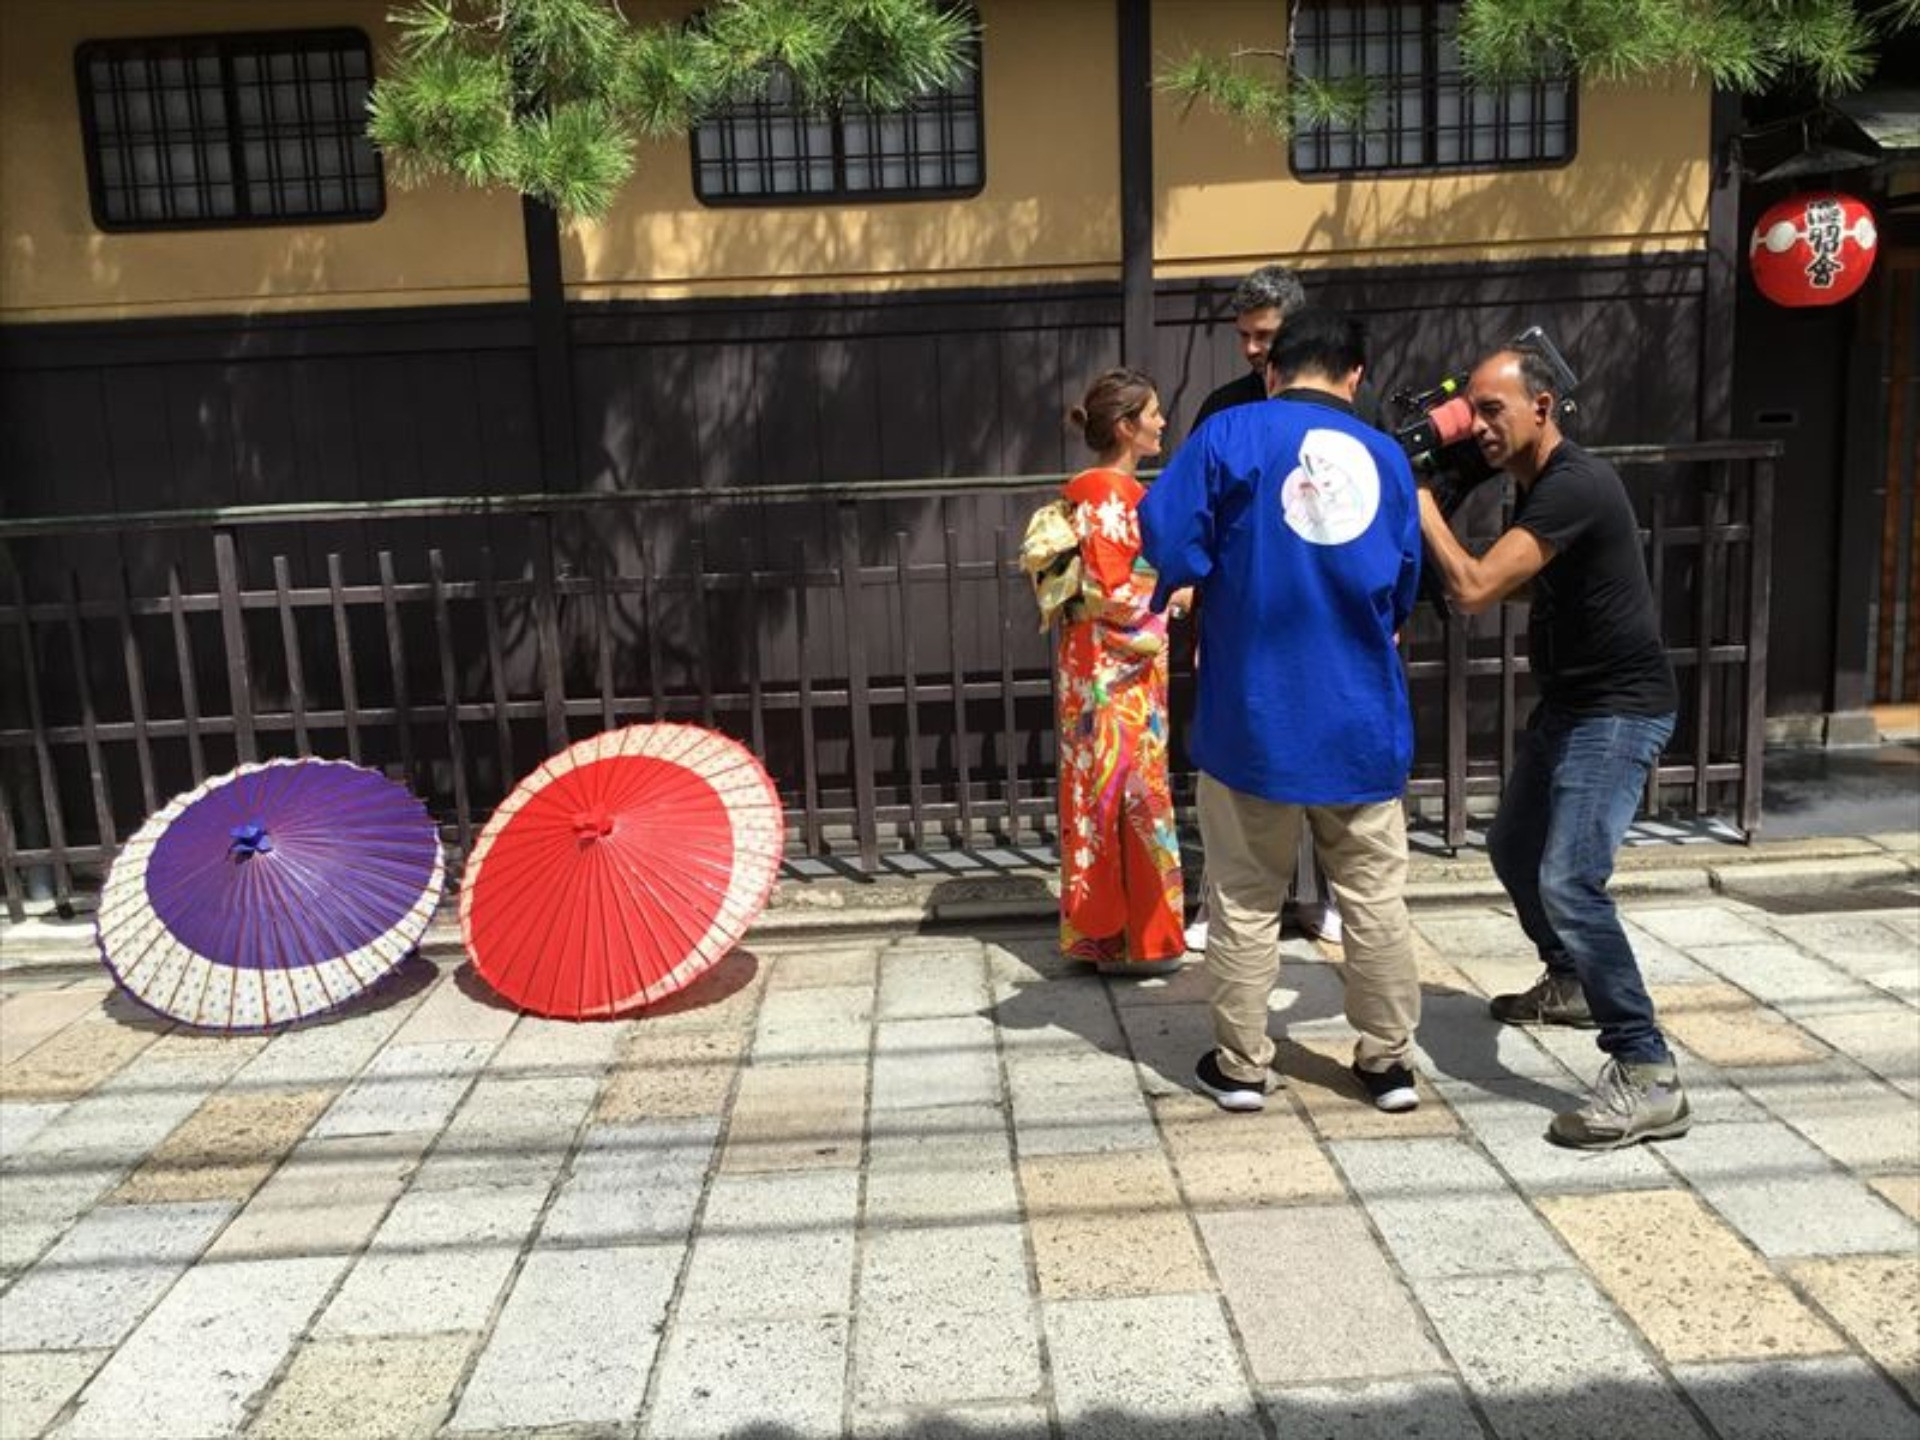 京都祇園で前撮り